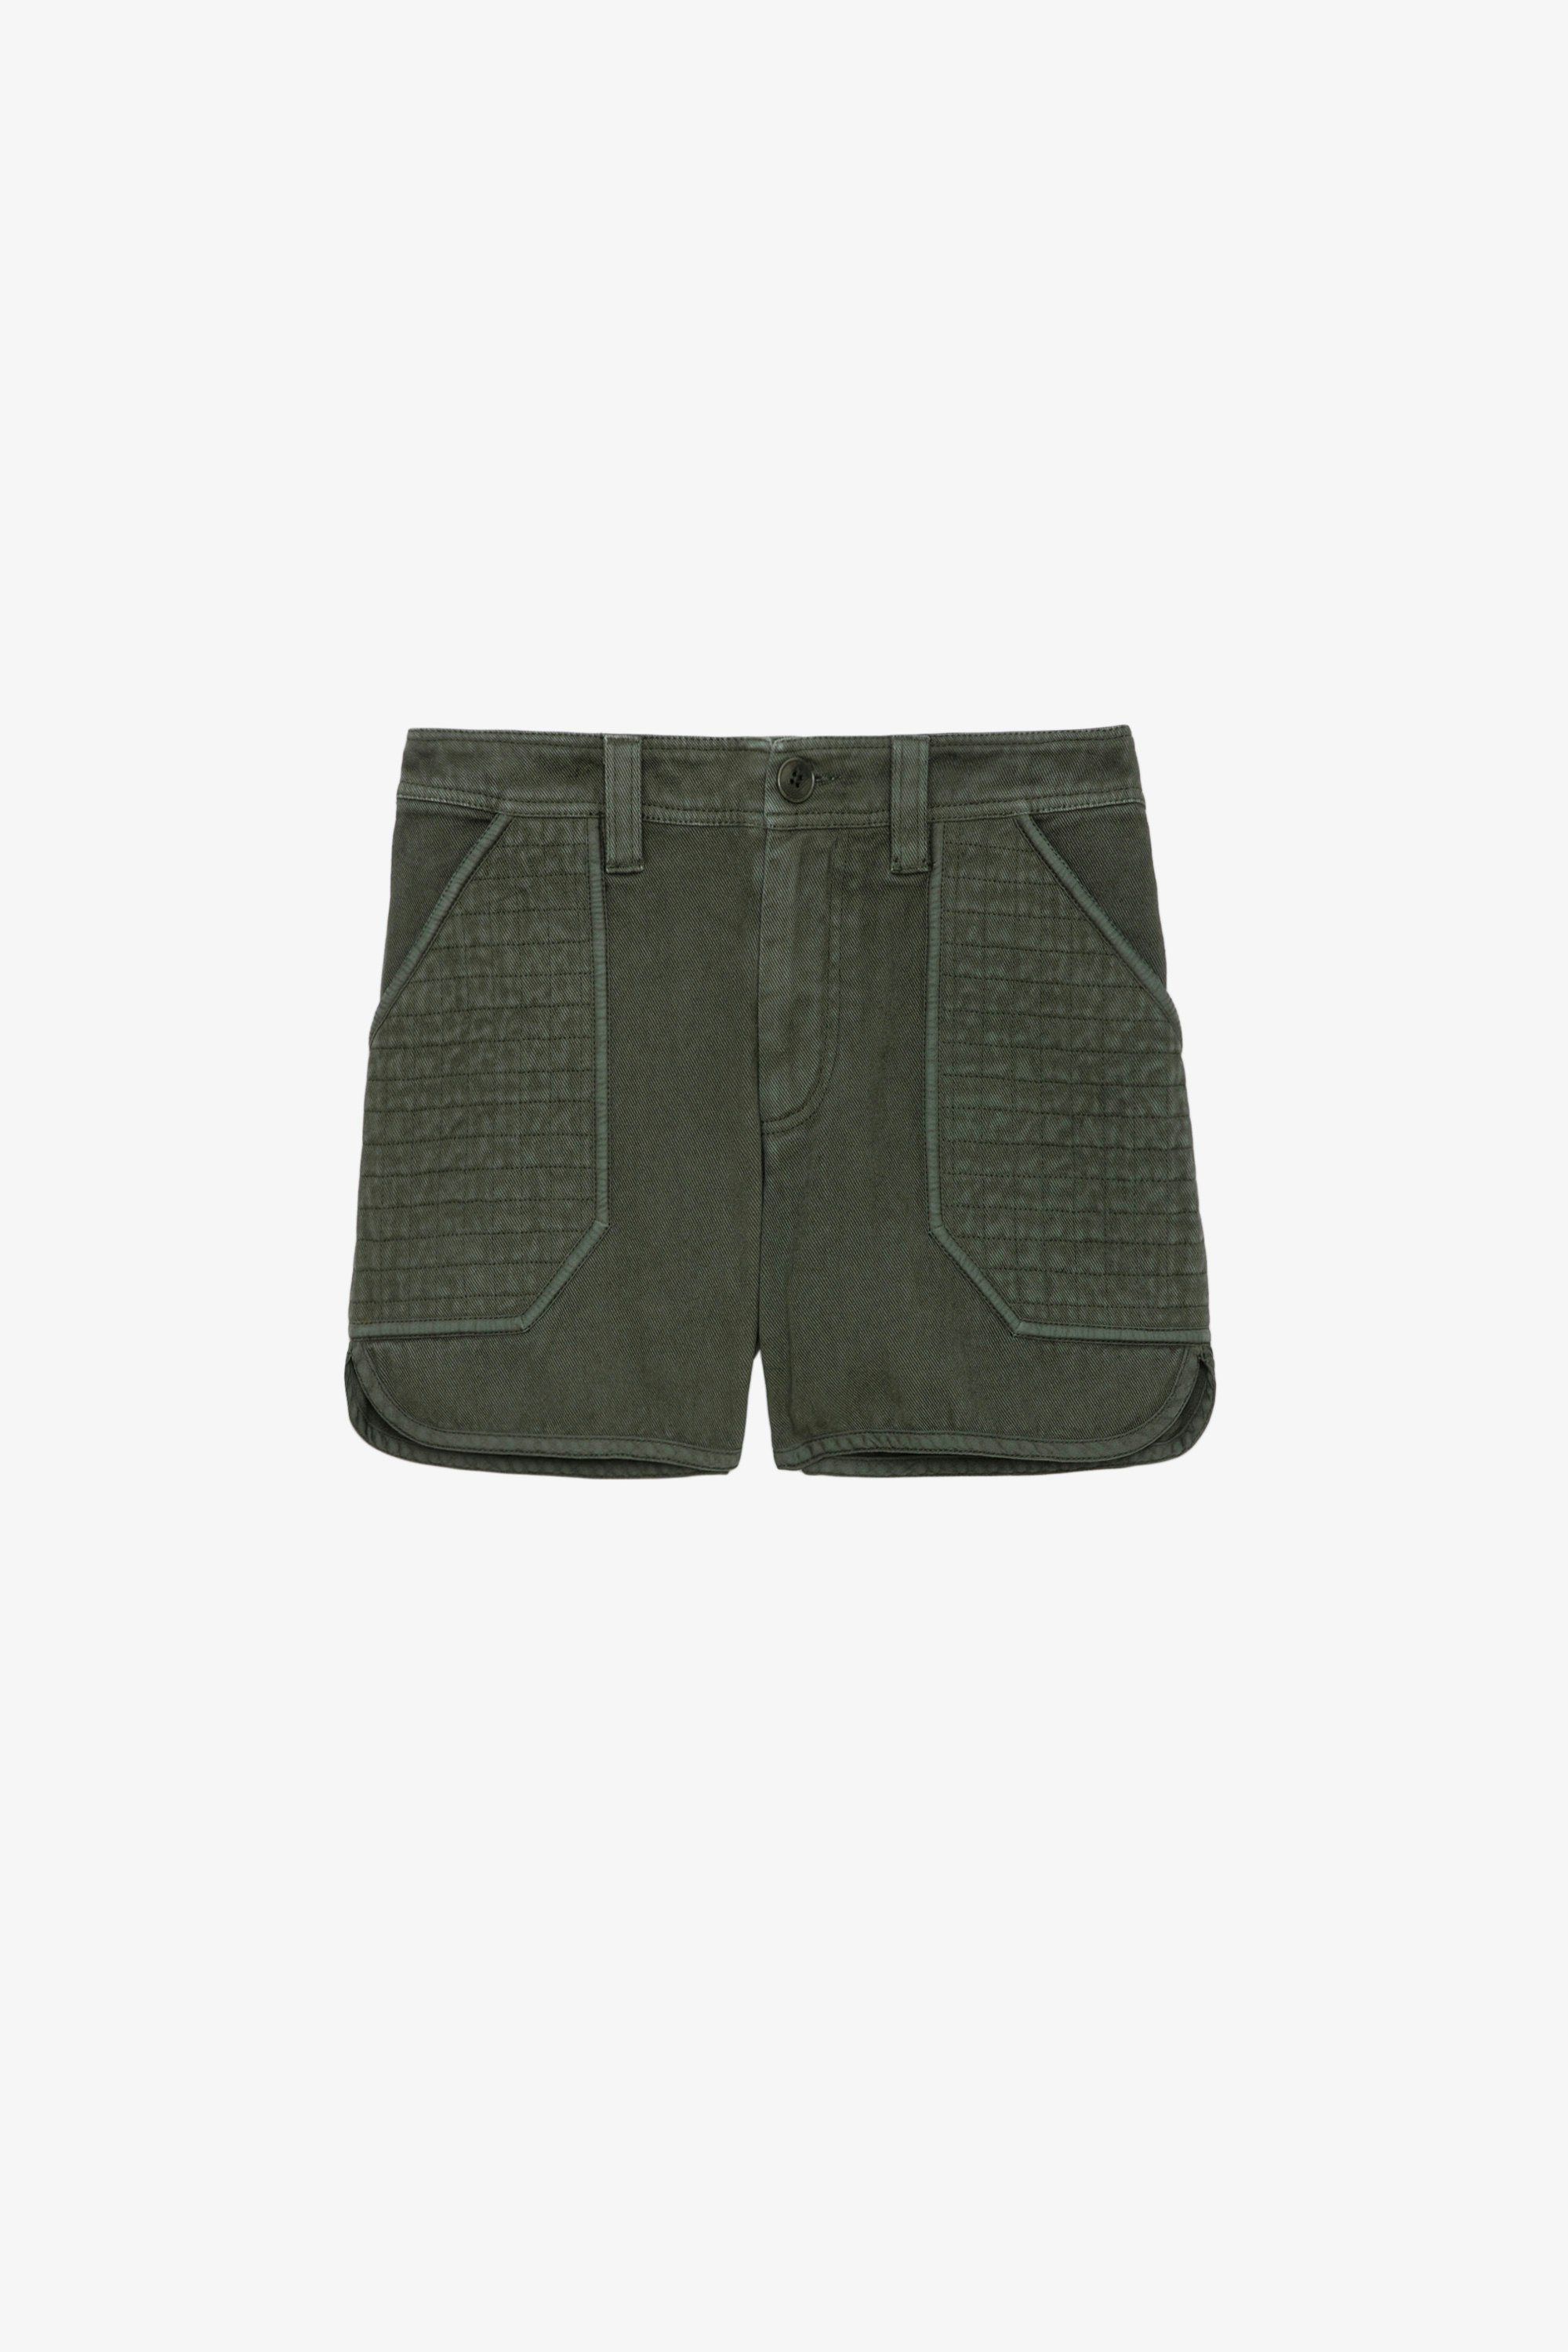 Pantalón Corto Sei - Pantalón corto de sarga de algodón en color caqui con bolsillos y apliques texturizados.